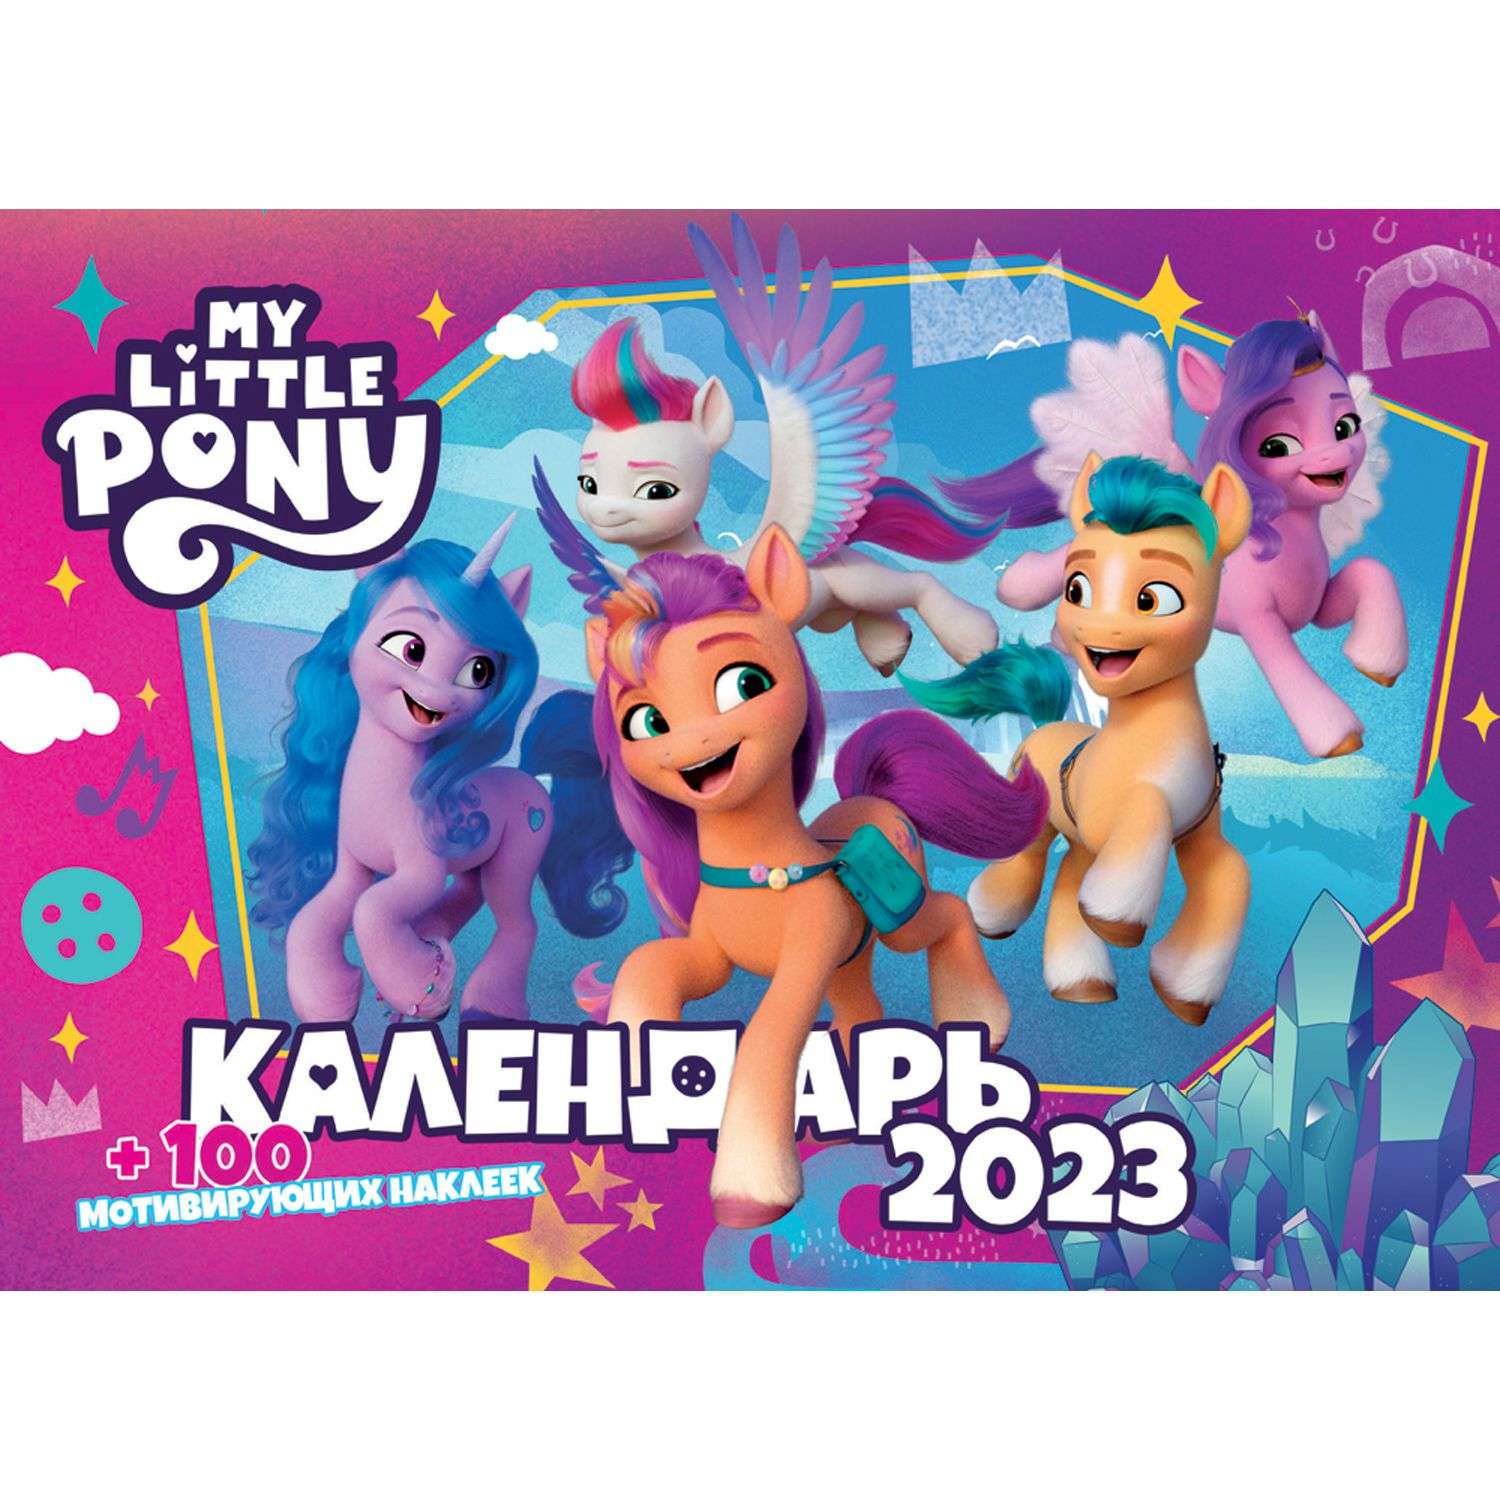 Календарь настенный перекидной ND PLAY My little pony c наклейками на 2023 год - фото 1